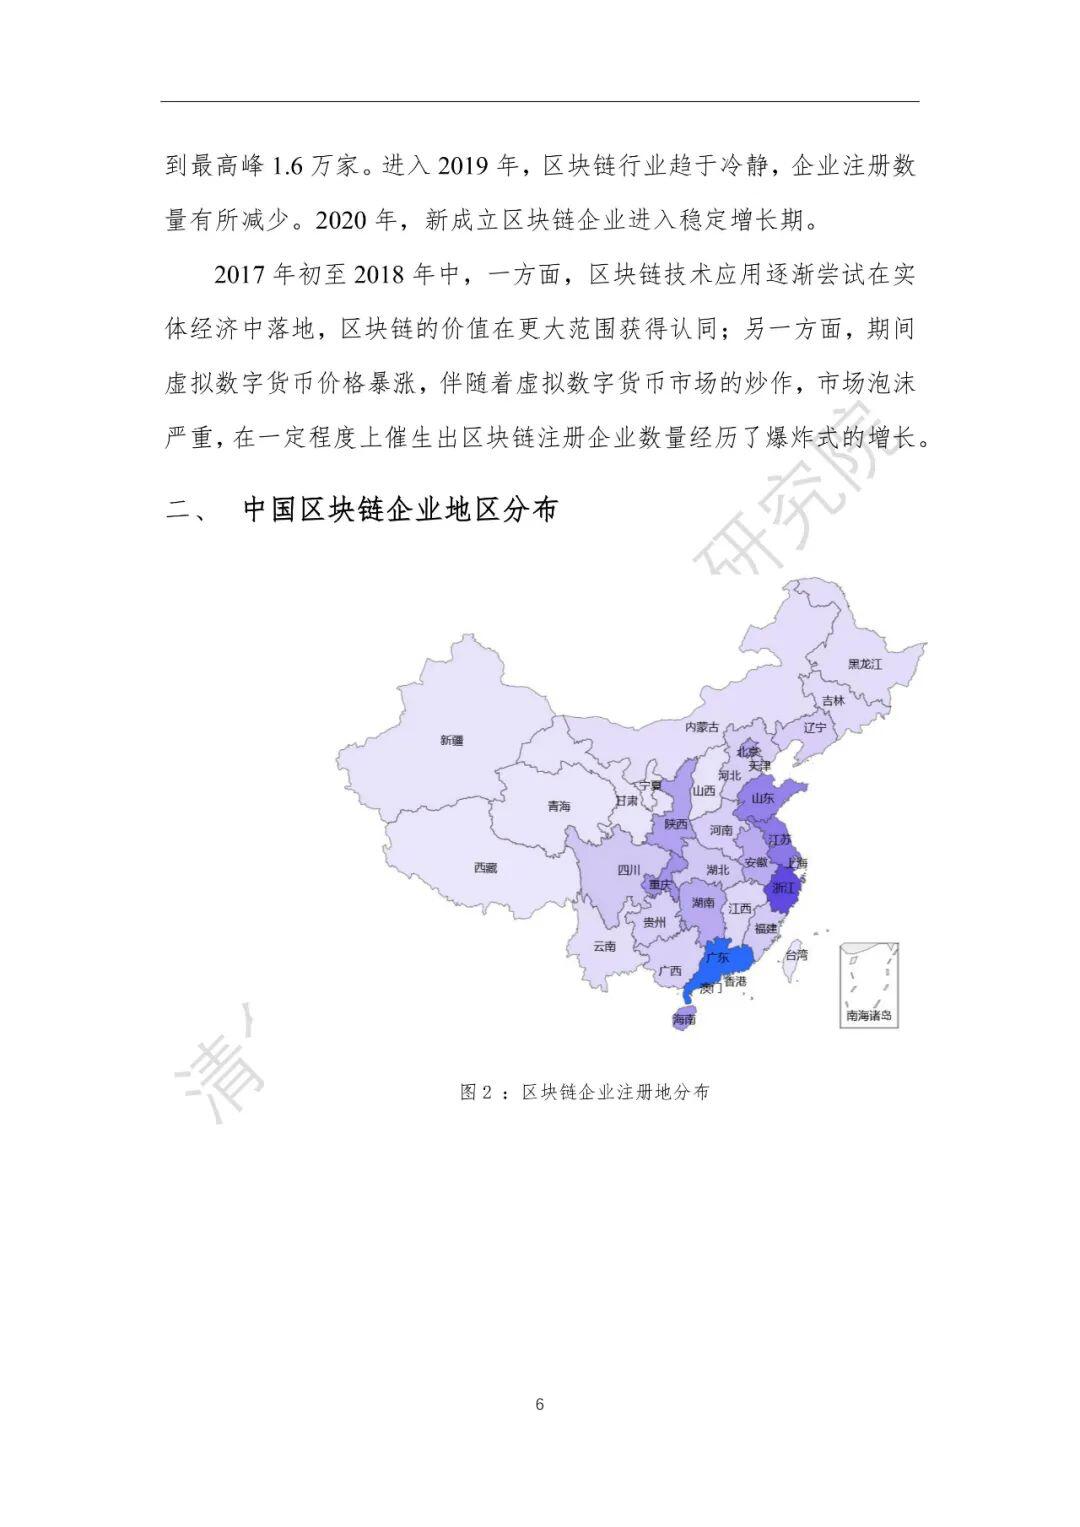 2020中国区块链产业生态地图